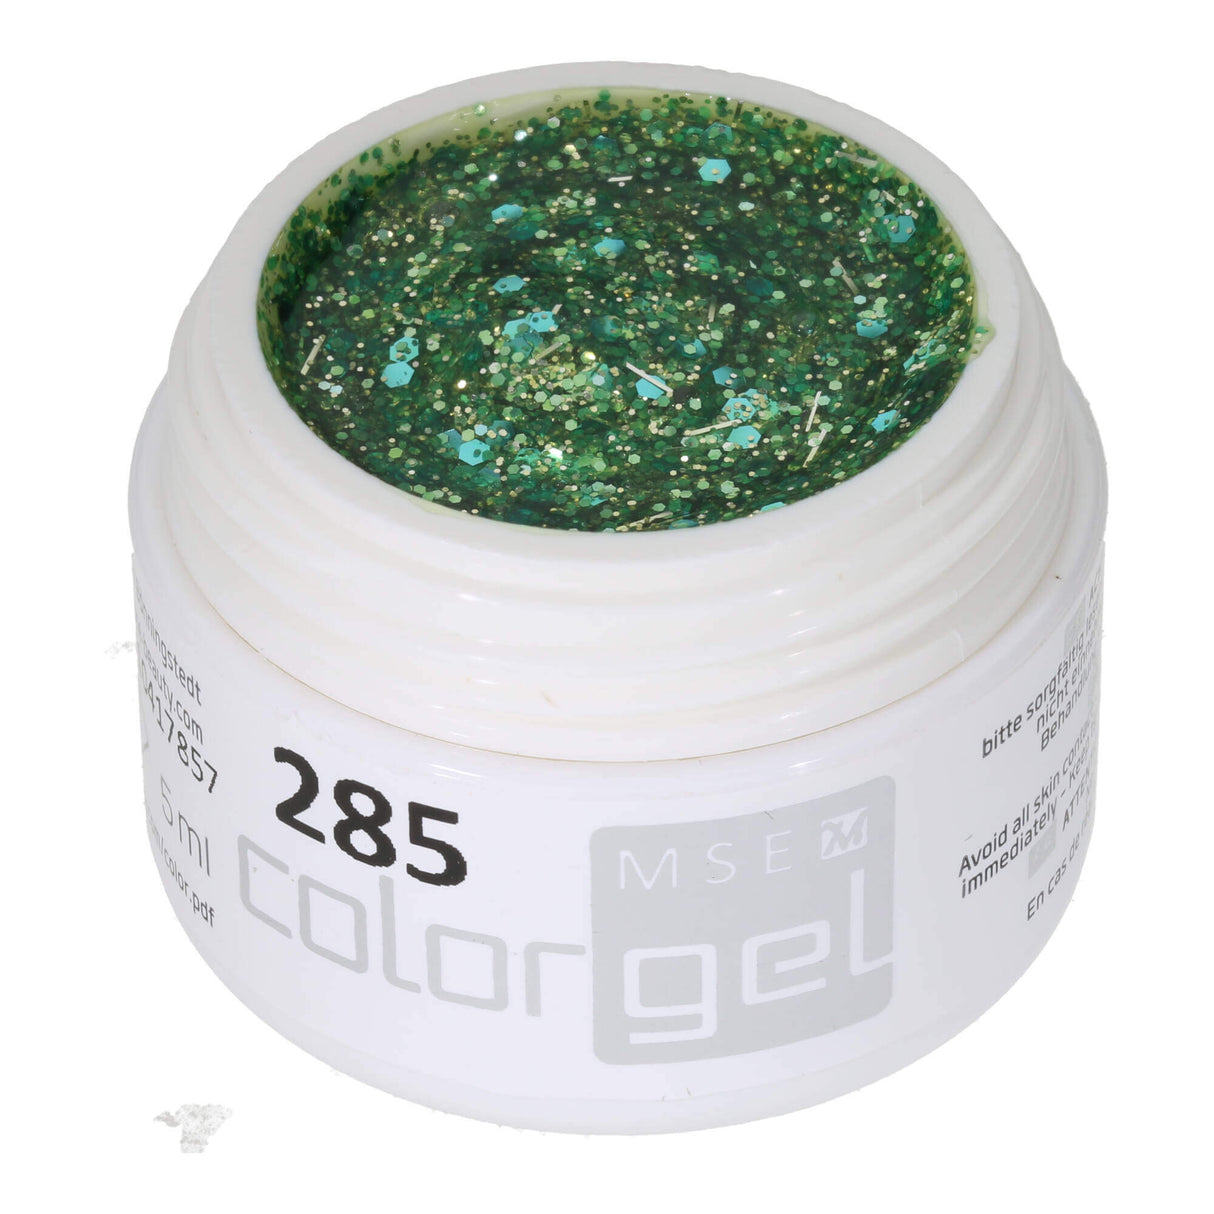 # 285 Premium-GLITTER Color Gel 5ml Gel pailleté vert menthe mélangé à des fils pailletés turquoise et argent